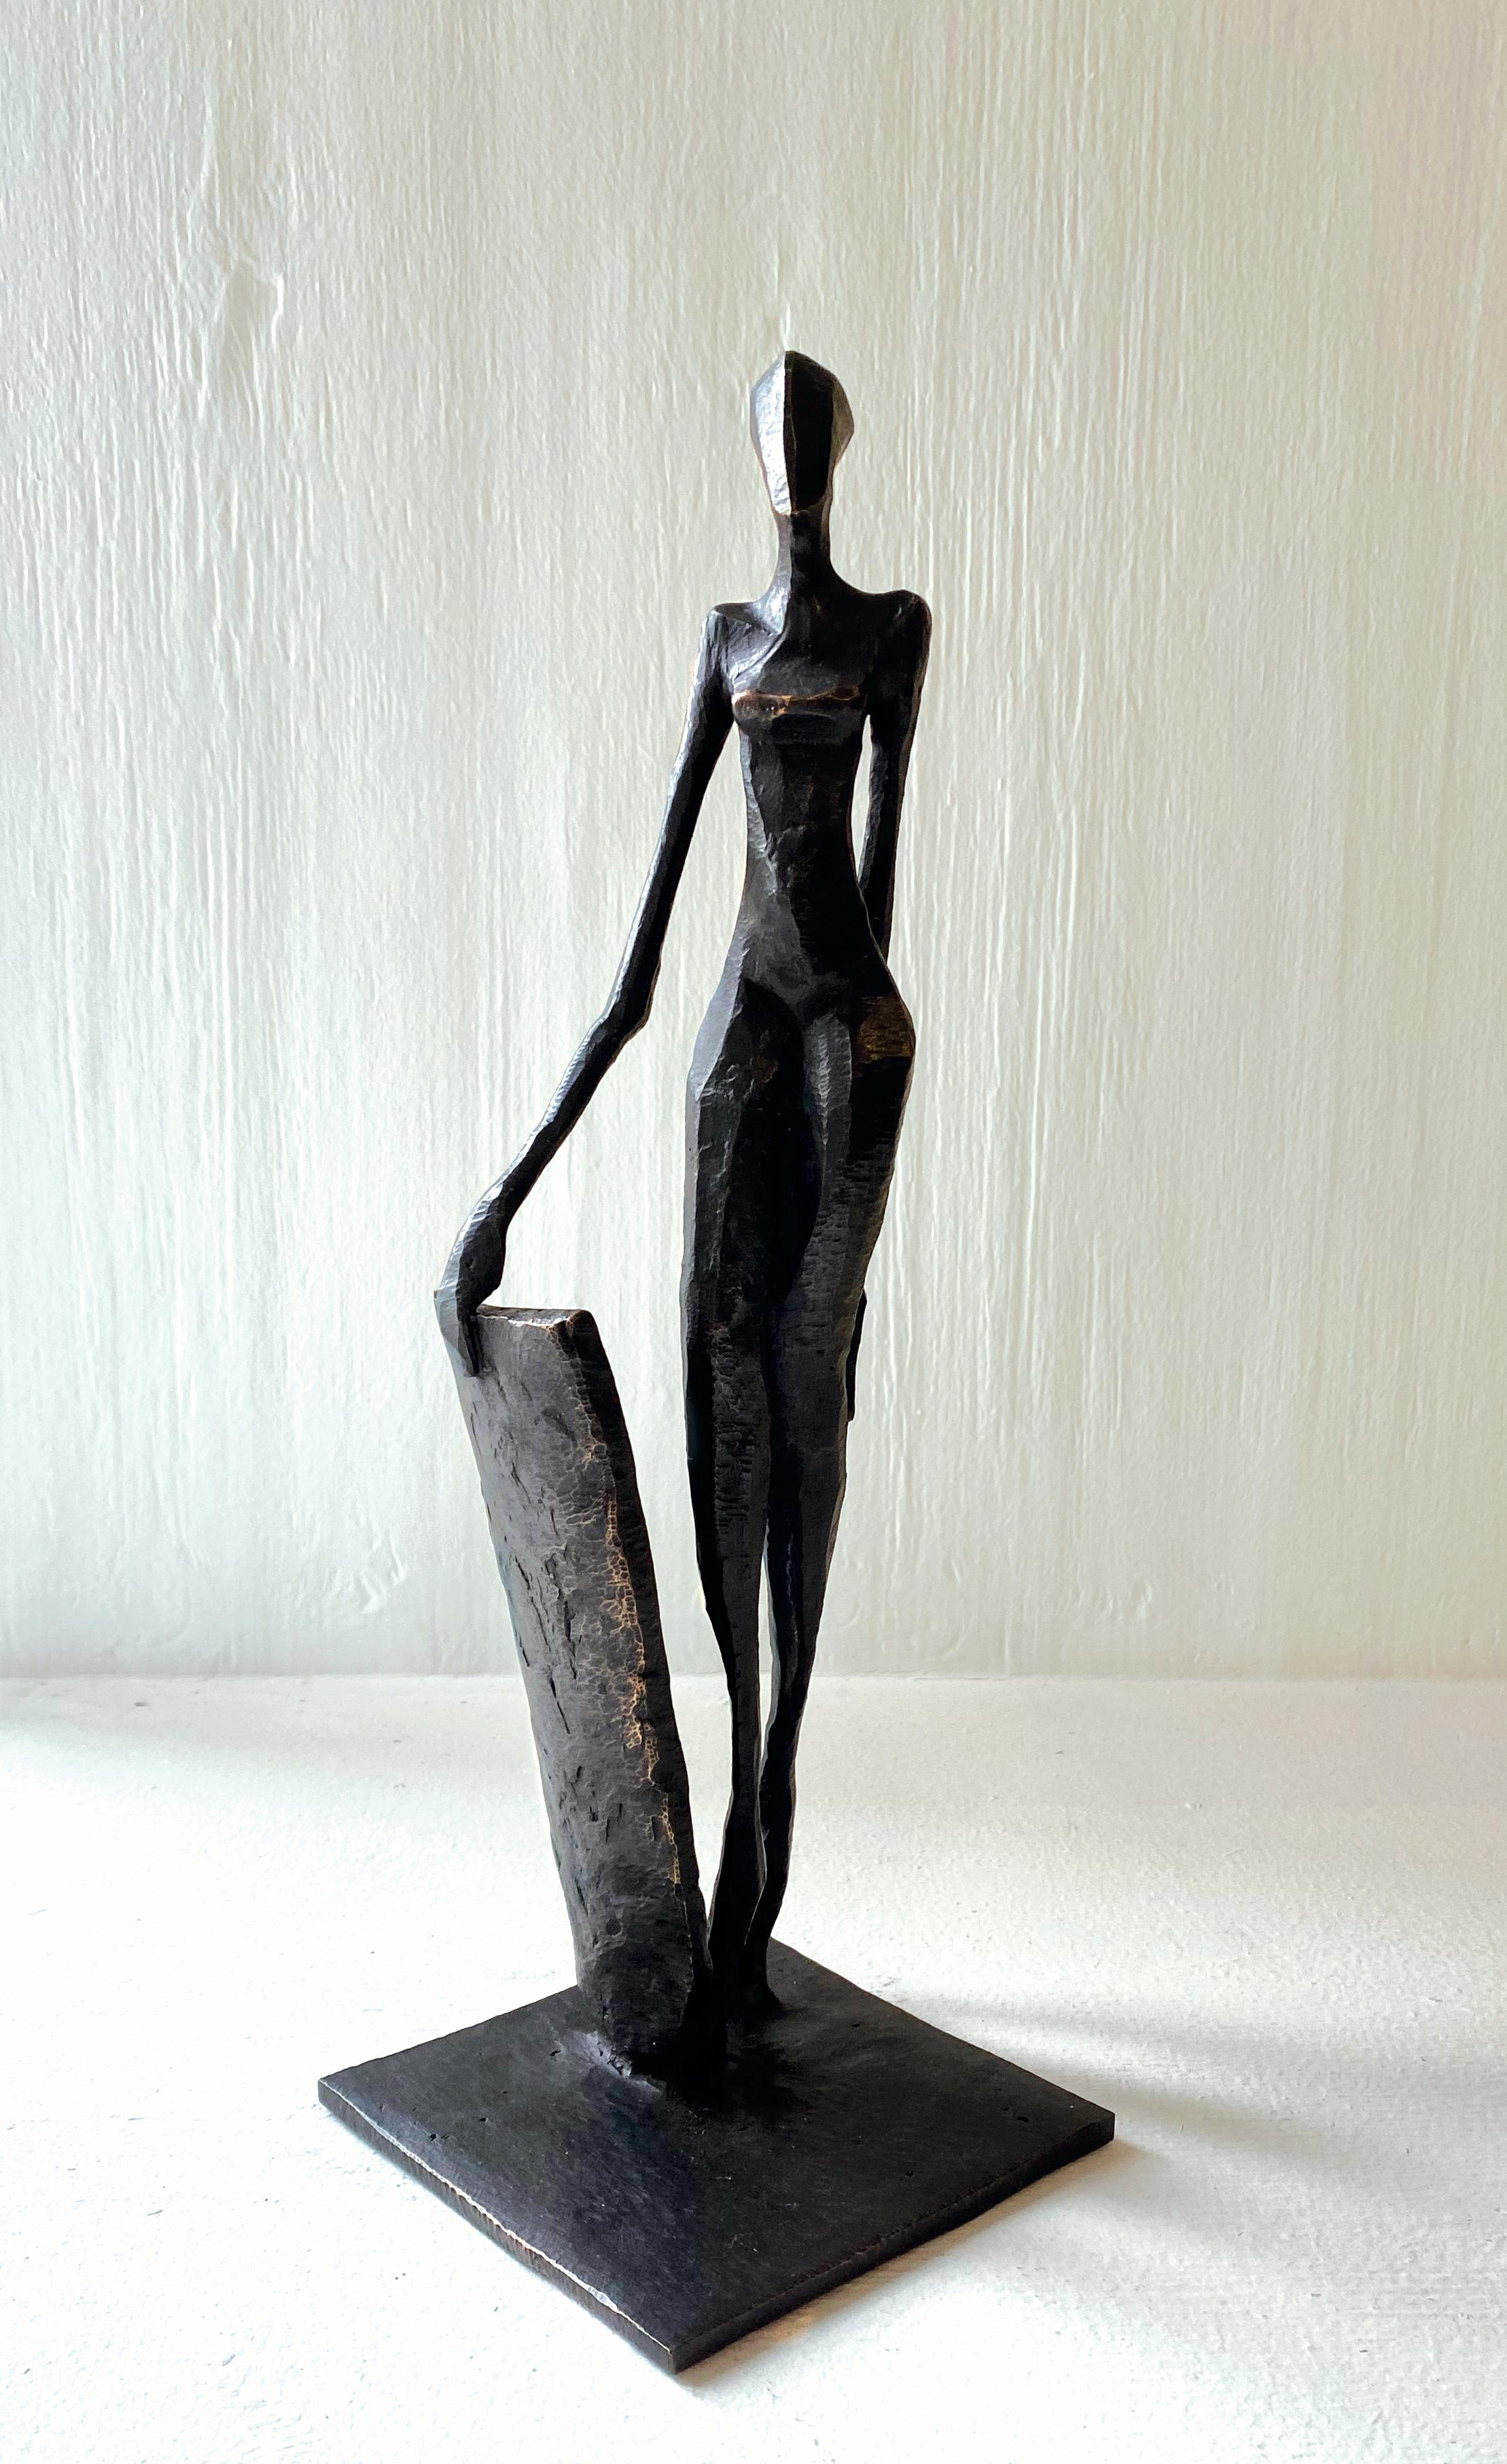 Yara ist eine elegante figurative Bronzeskulptur von Nando Kallweit.

Der stilisierte ägyptisch angehauchte Kopf ist der modernen jugendlichen Haltung nachempfunden, verweist aber auch auf die Bedeutung des Erbes. Ein schönes Stück für sich allein